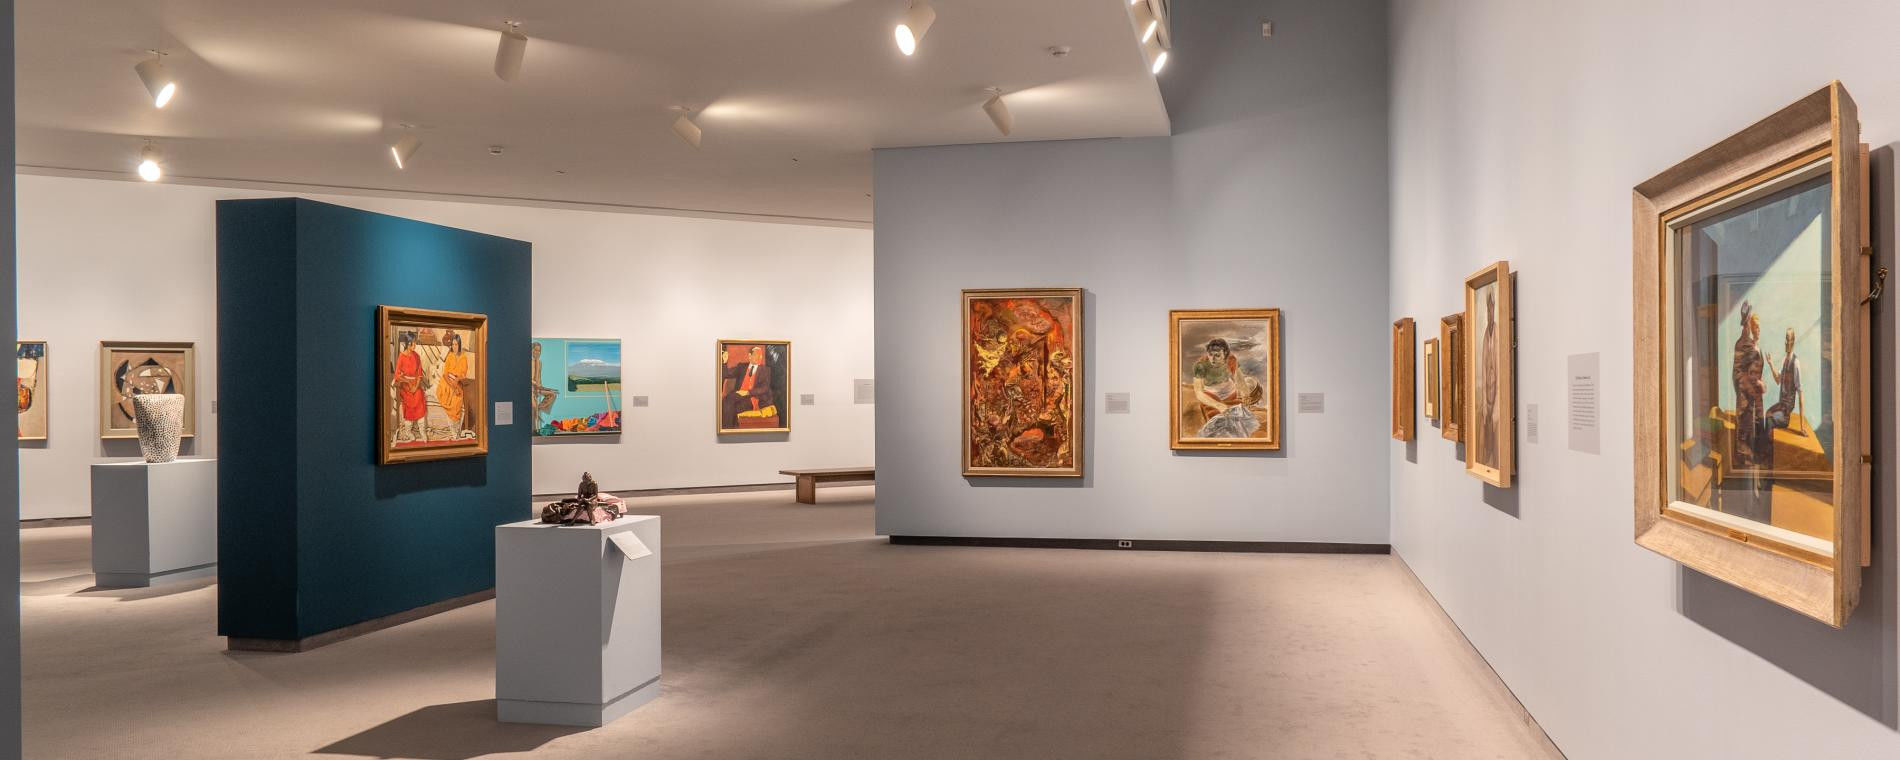 Antes de comprar arte, visite museos con diferentes movimientos artísticos para descubrir cuál es su estilo favorito